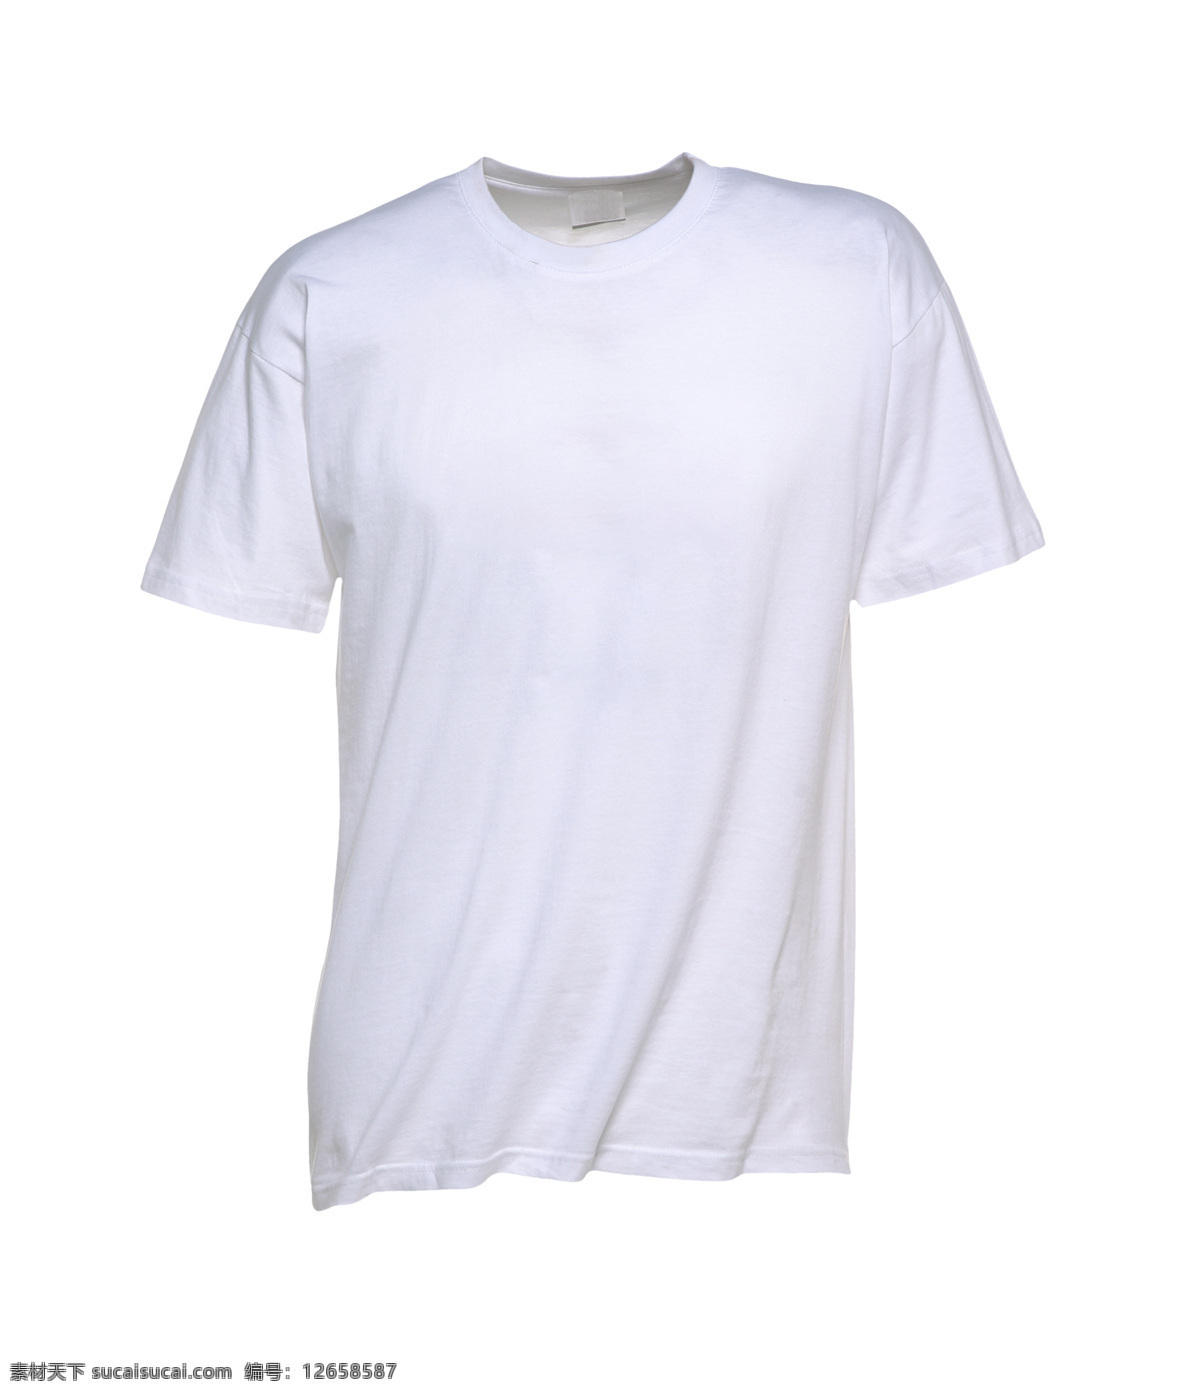 圆领 短袖 t 恤 男士空白t恤 短袖t恤衫 t恤设计 服装设计 白色t恤 服装服饰 珠宝服饰 生活百科